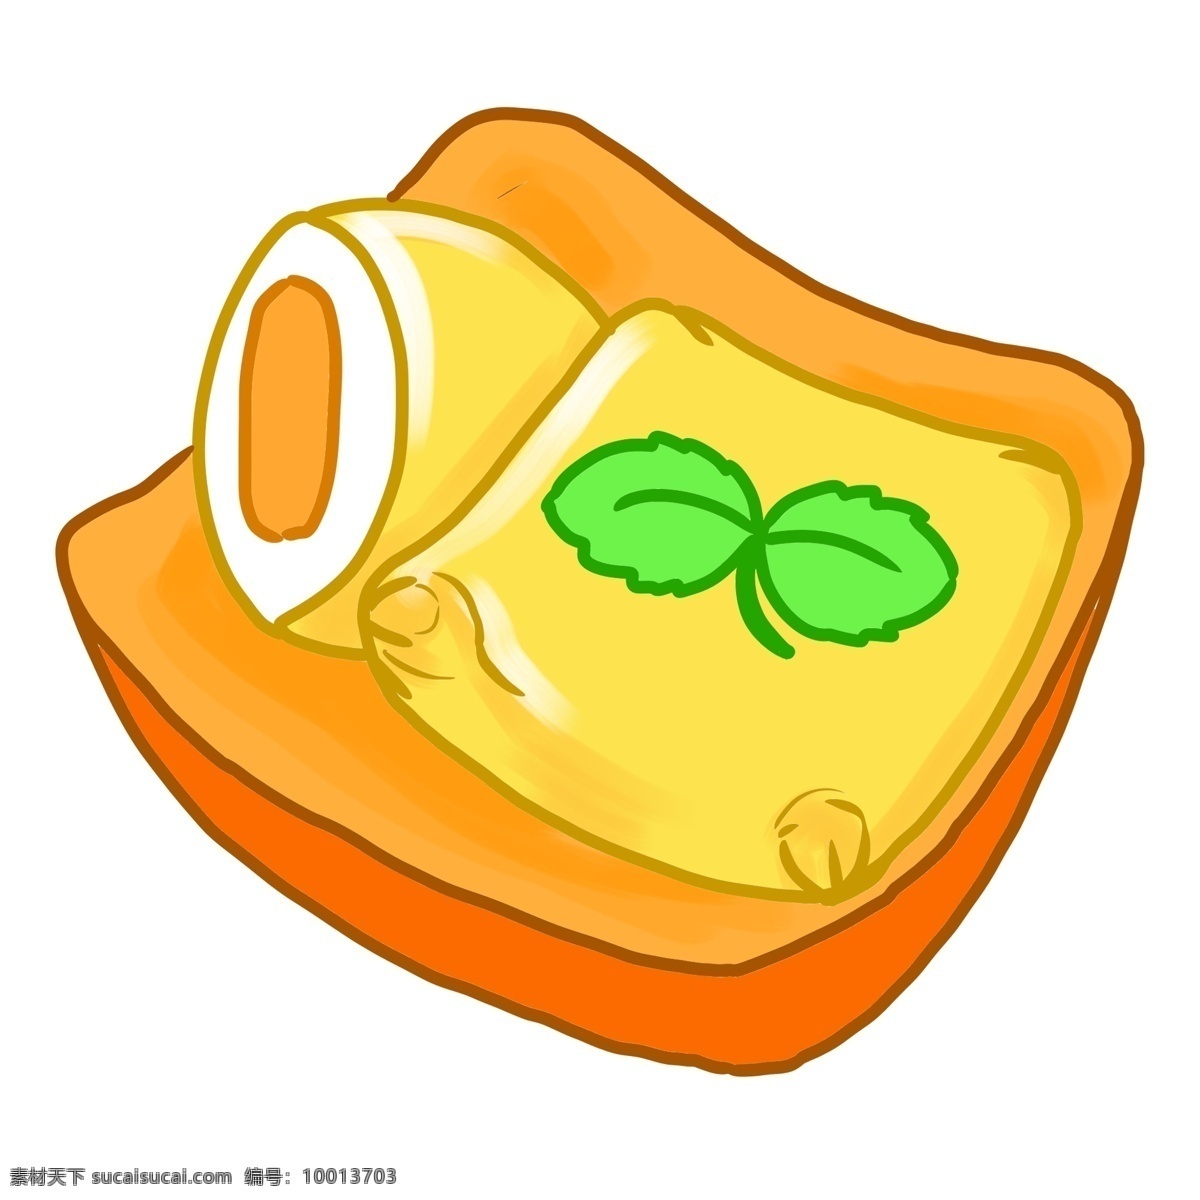 精美 黄色 蛋 挞 插画 精致的蛋挞 食物插画 小吃插画 卡通食物插画 小吃 精美的食物 创意小吃插画